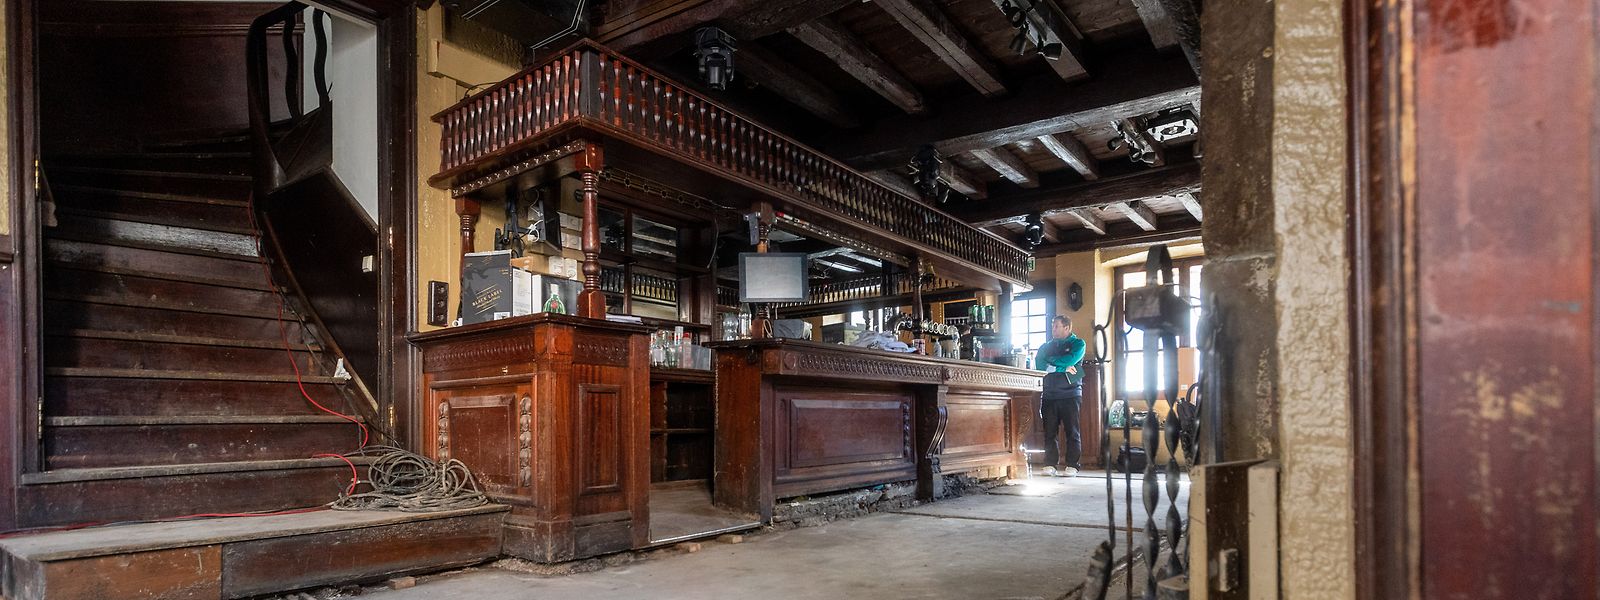 Der Scott's Pub gehört zu den traditionsreichsten Cafés in Luxemburg.